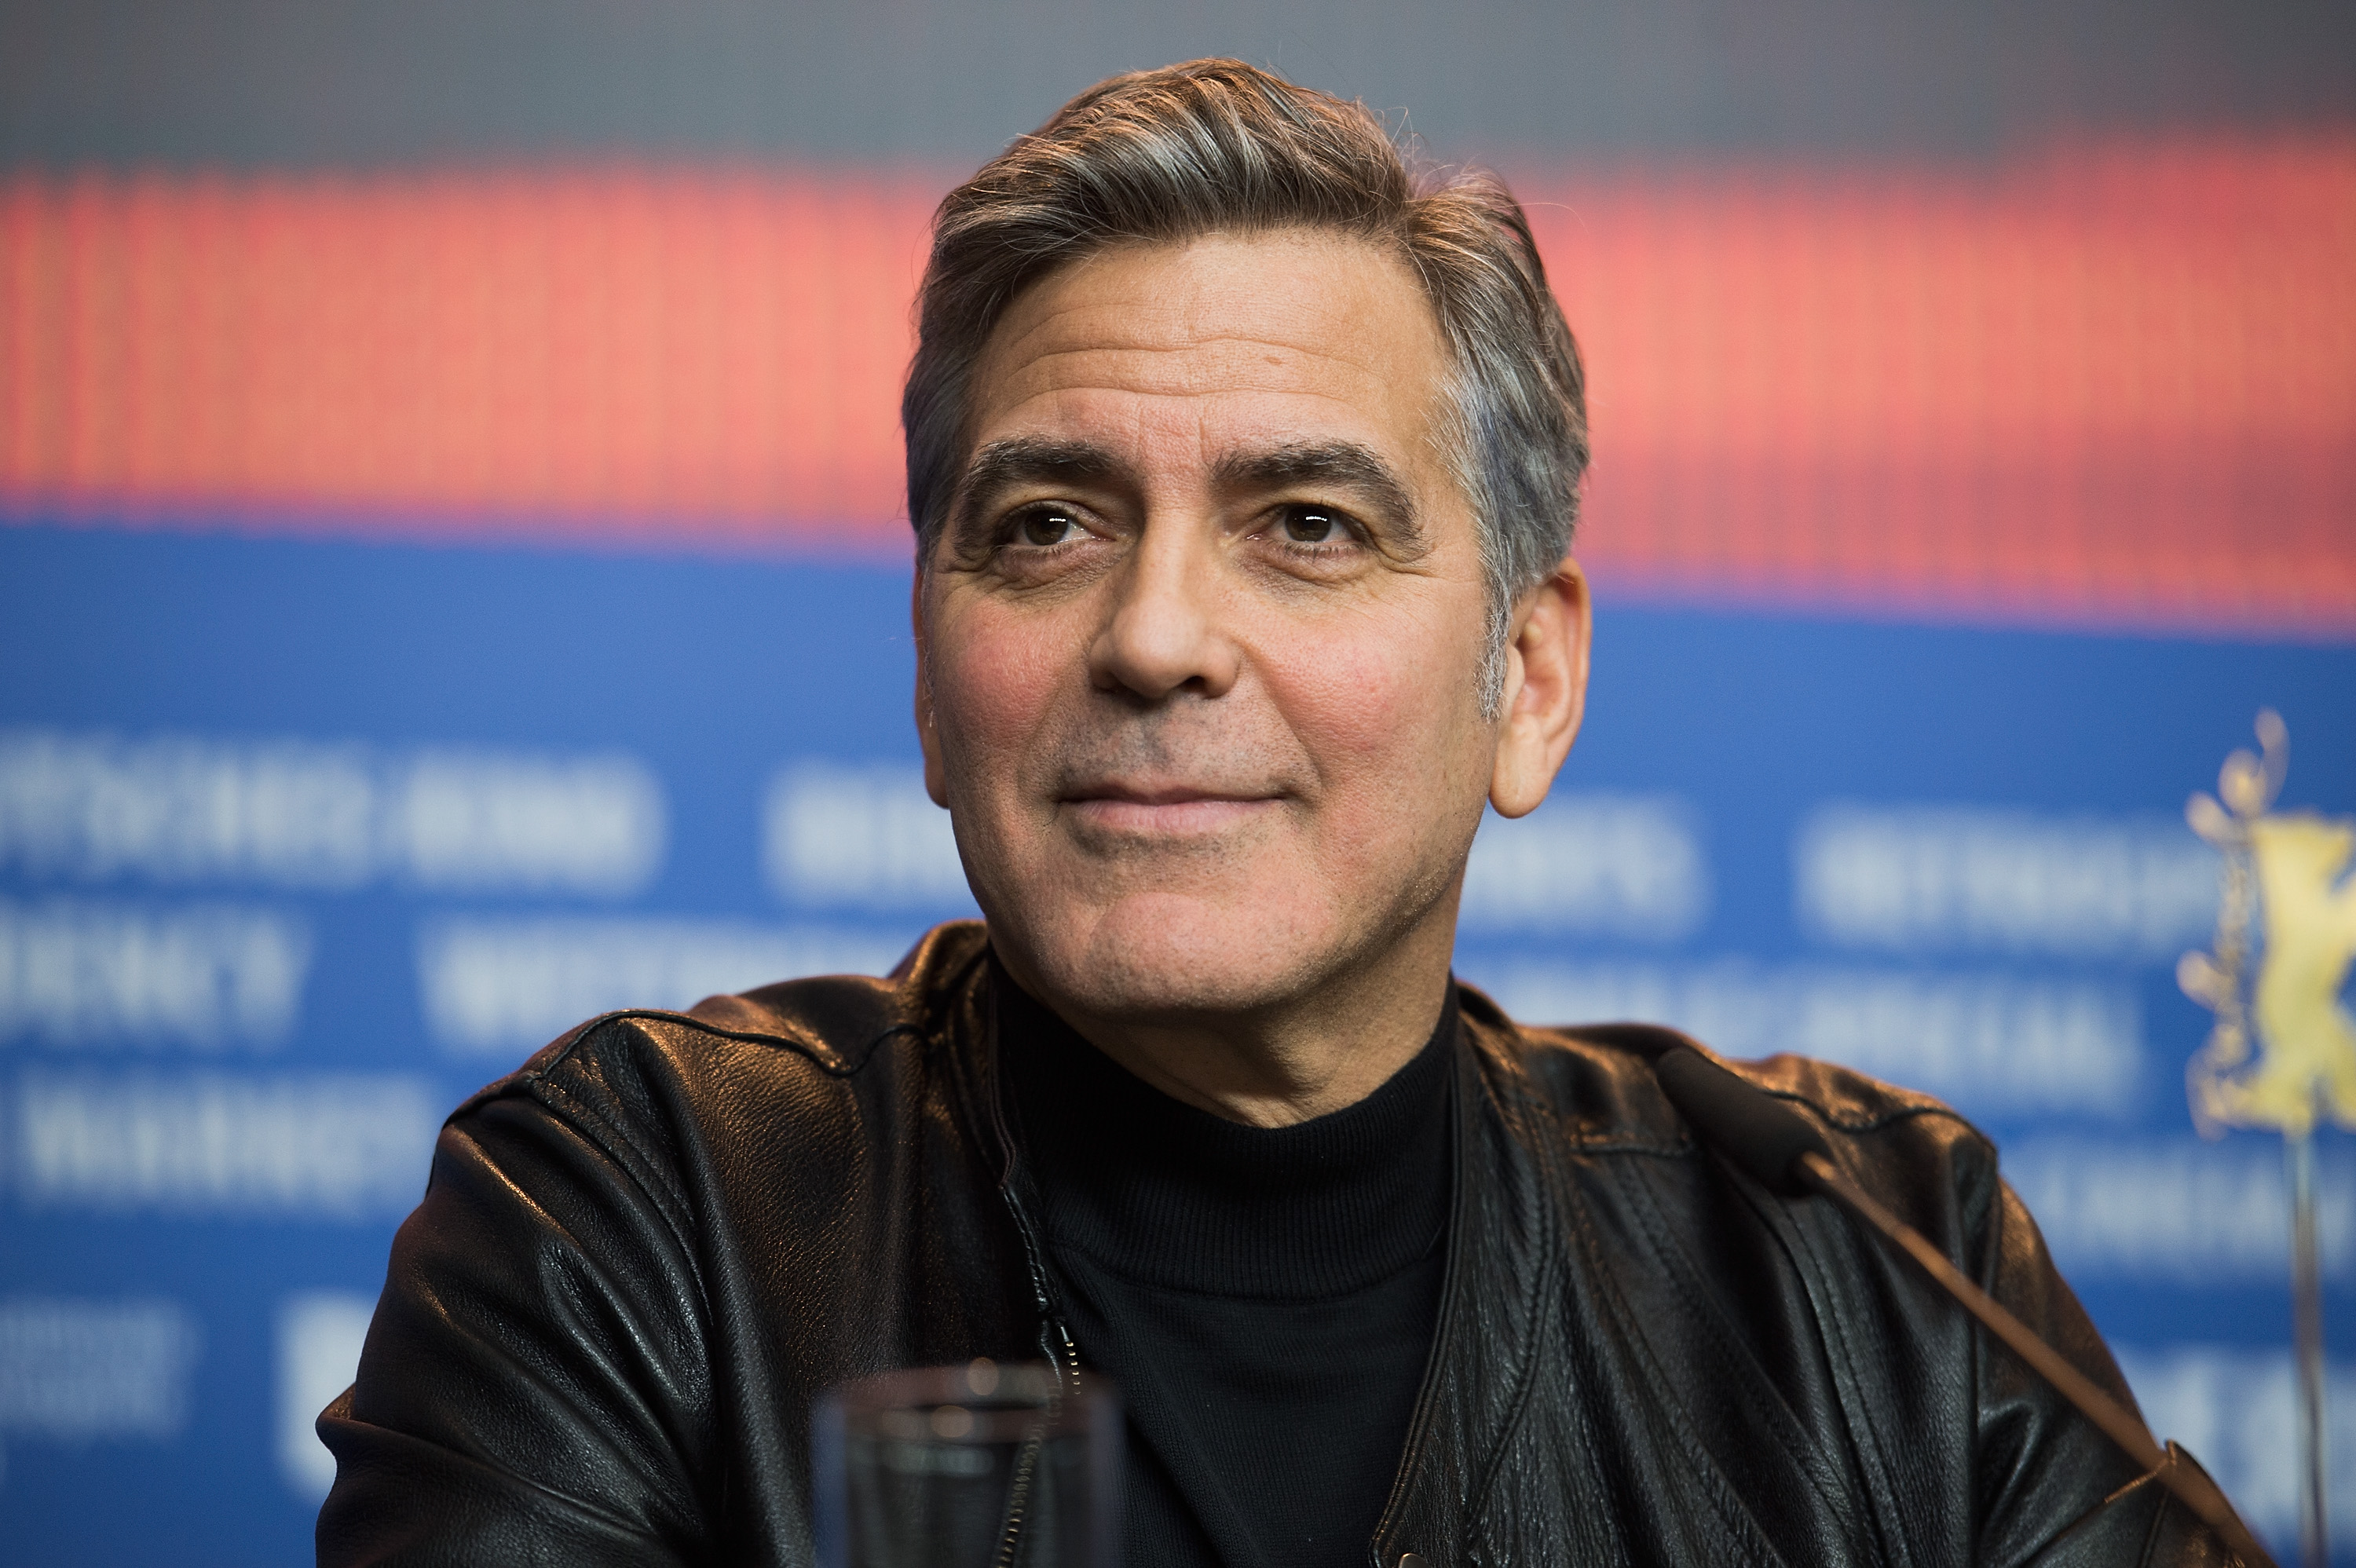 George Clooney asiste a la rueda de prensa de "¡Ave, César!", durante la 66ª Berlinale Festival Internacional de Cine de Berlín en el Hotel Grand Hyatt el 11 de febrero de 2016 en Berlín, Alemania | Foto: Getty Images